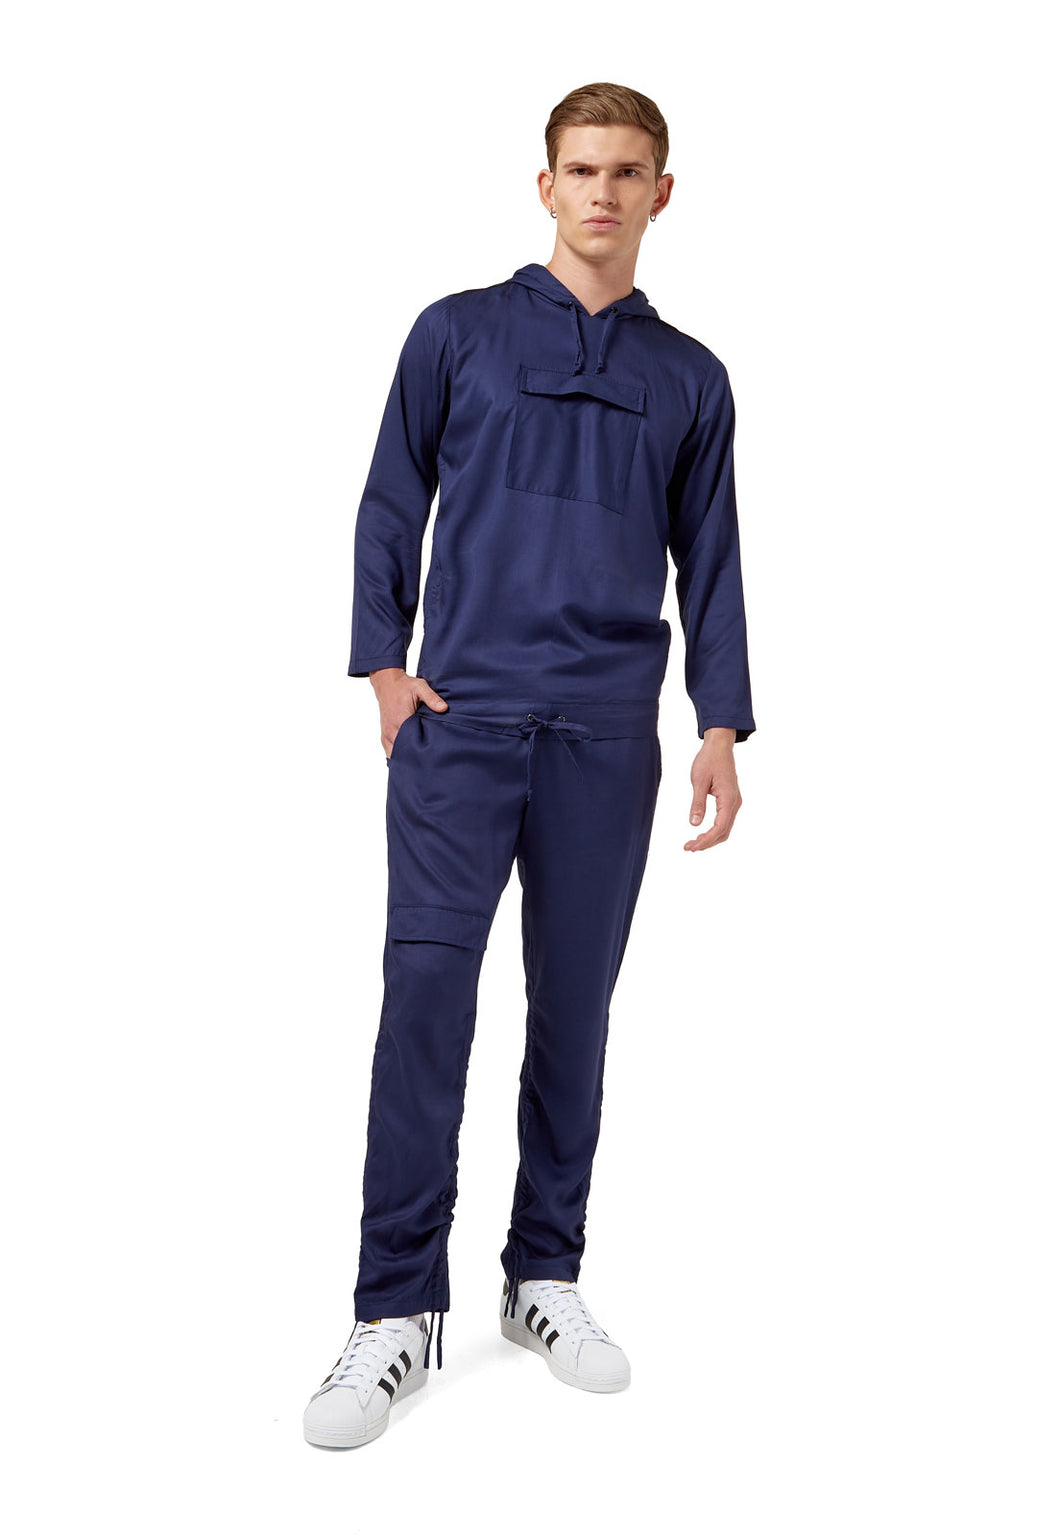 Pantalón  retráctil azul náutico de OSOP Mansion, new Fluid chic style for men. Nuevas tendencias de moda masculina y sin género, hecho en Colombia.